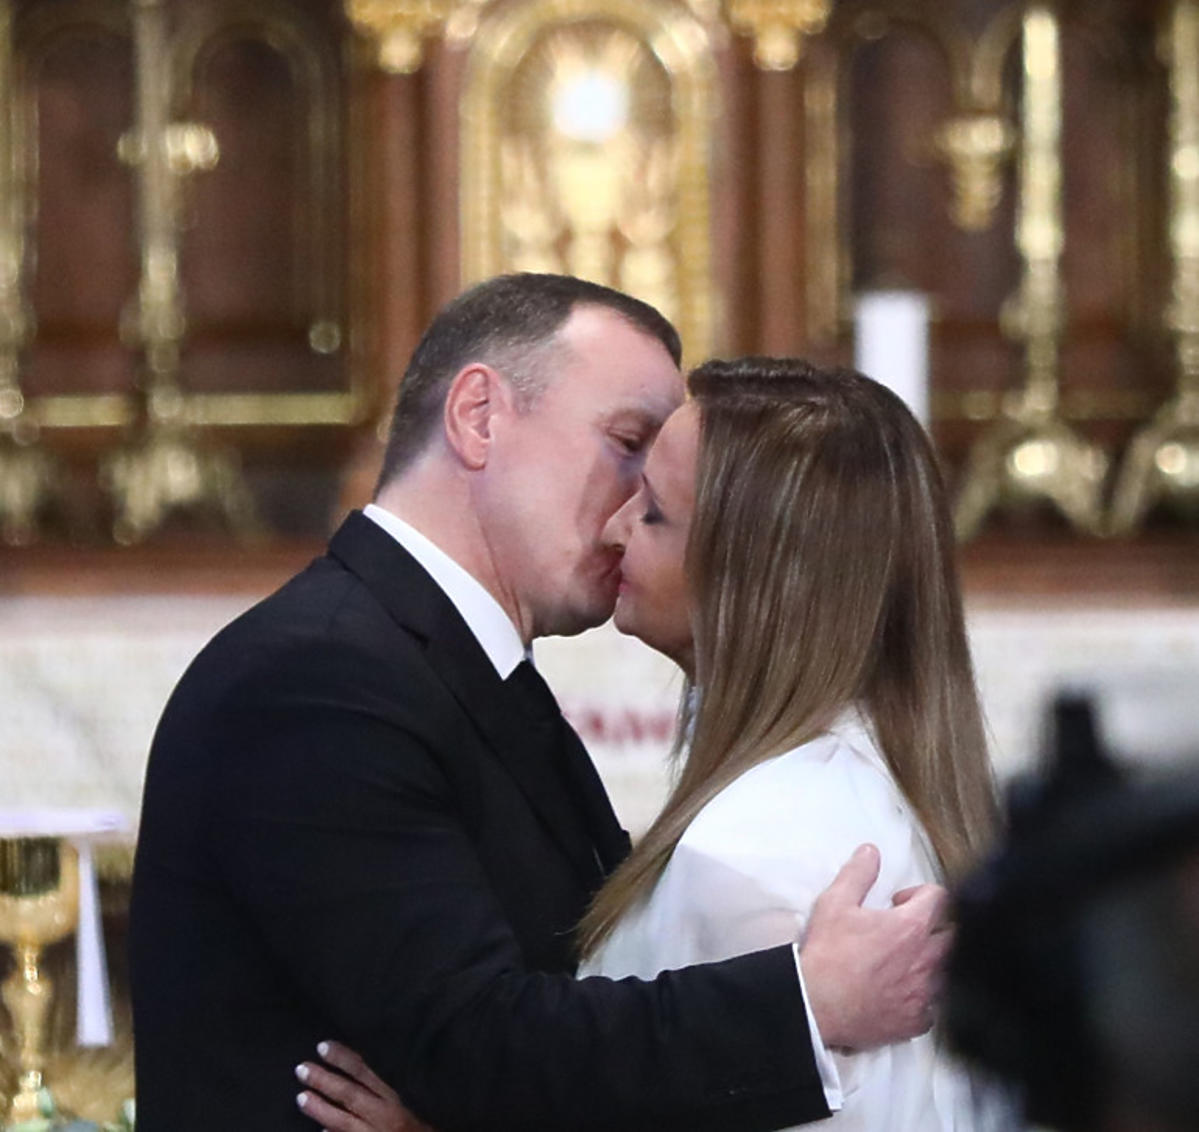 Ślub Jacka Kurskiego i Joanny Klimek w Sanktuarium Bożego Miłosierdzia w krakowskich Łagiewnikach